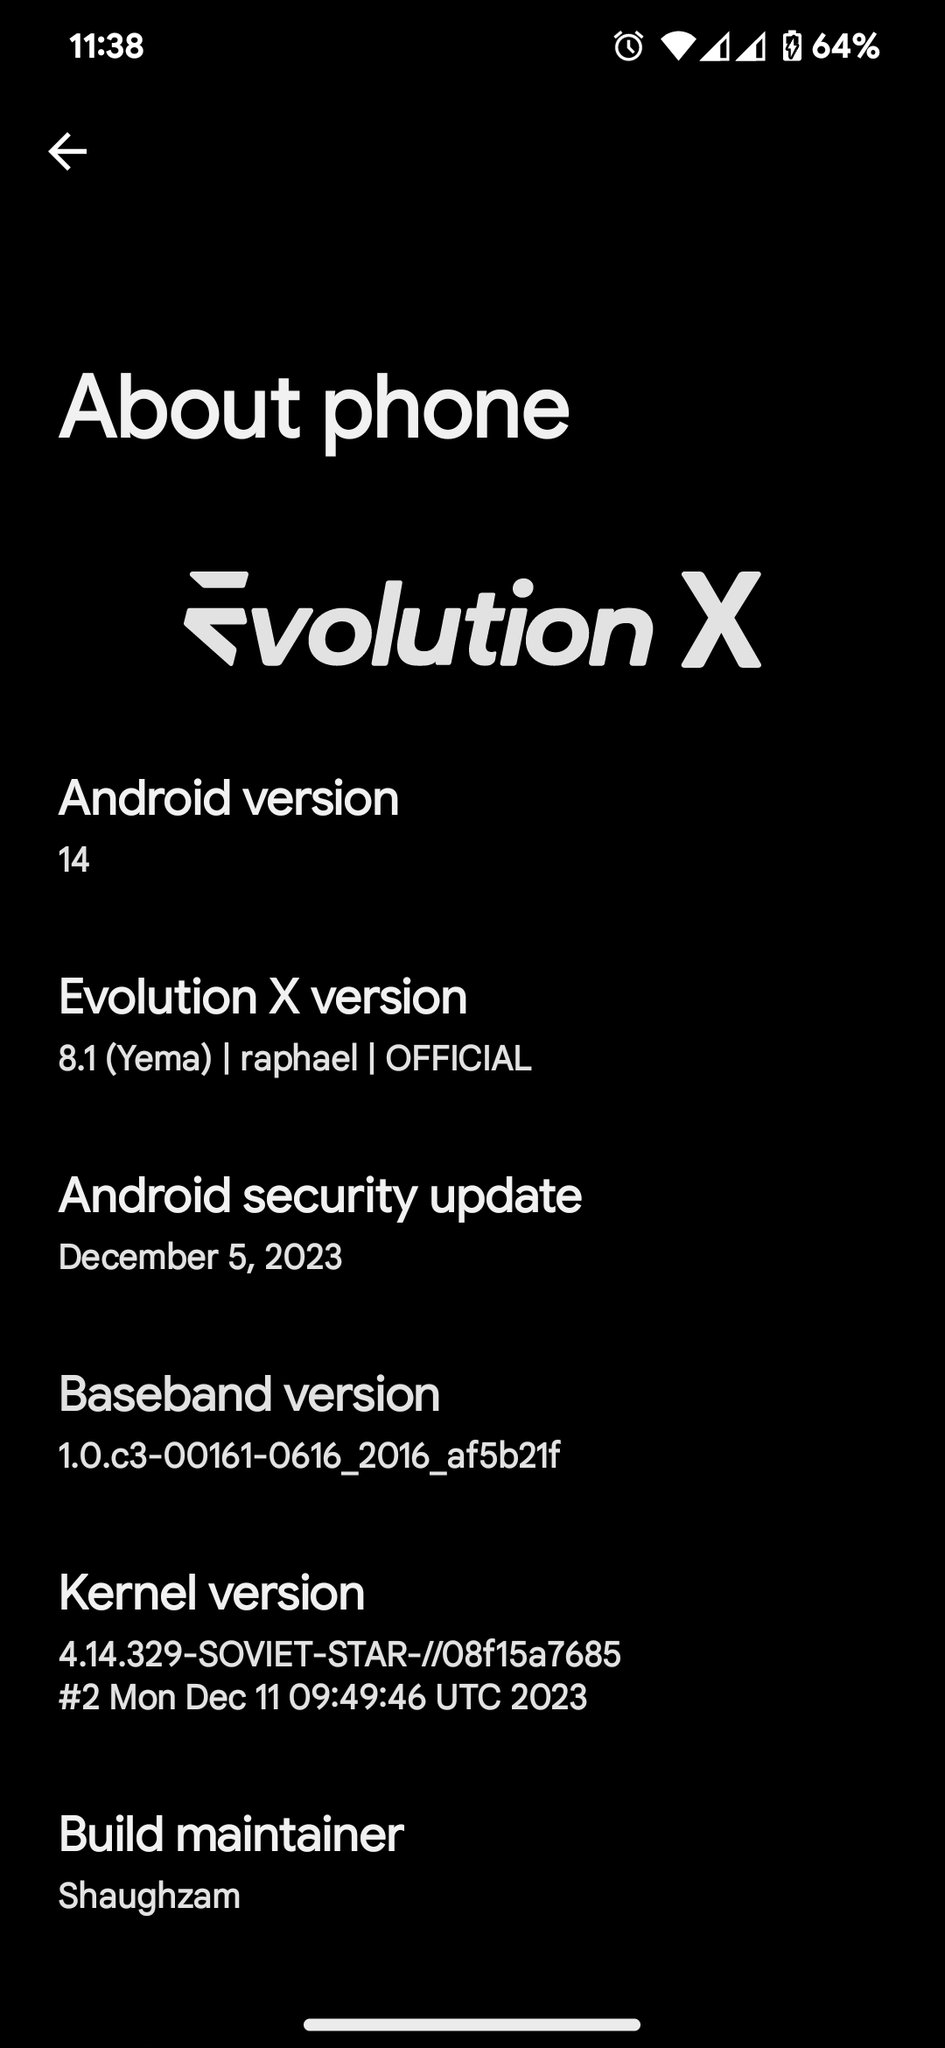 EvolutionX